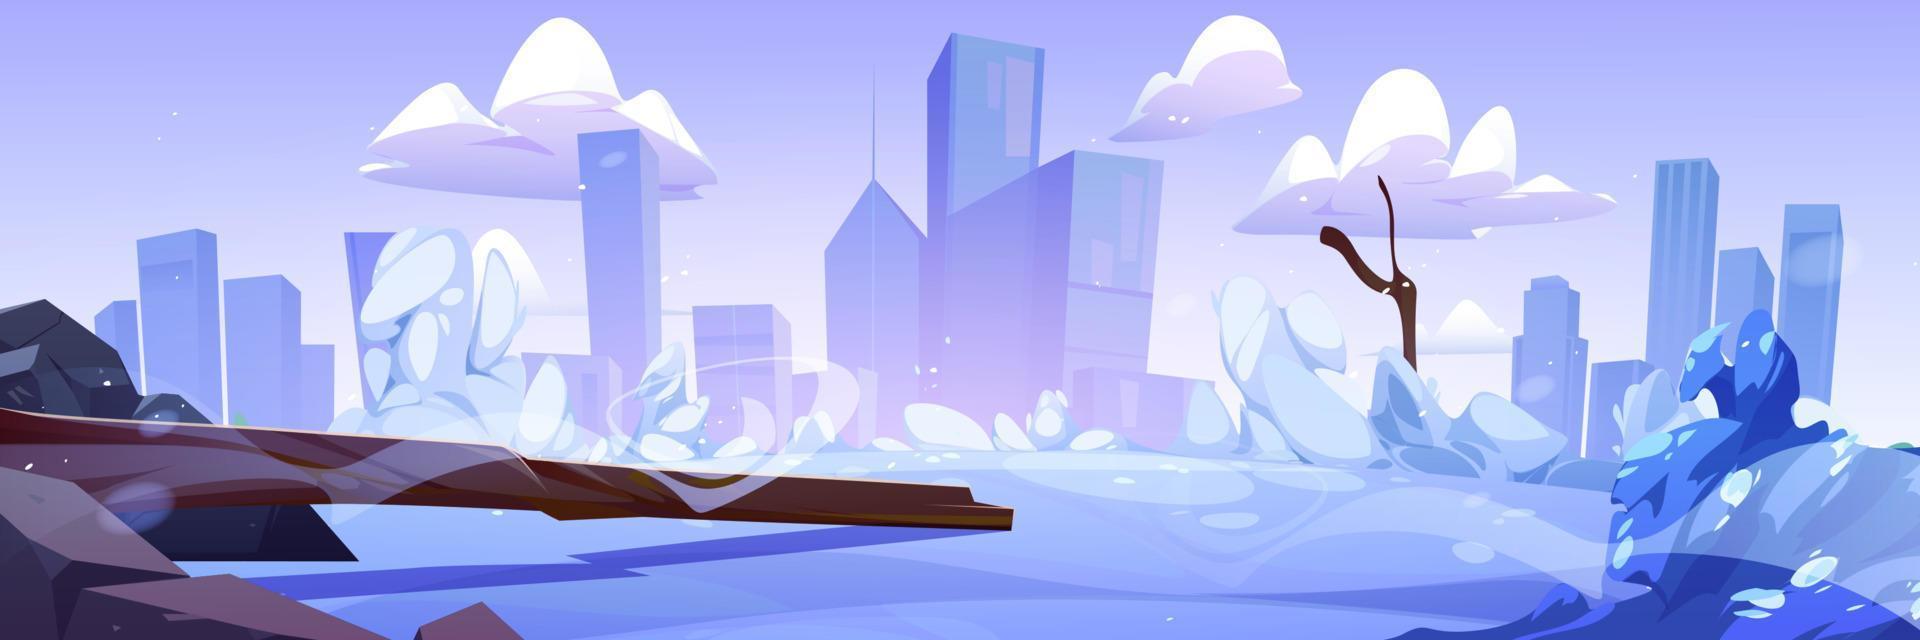 paisaje de invierno de dibujos animados con paisaje nevado 15918075 Vector  en Vecteezy